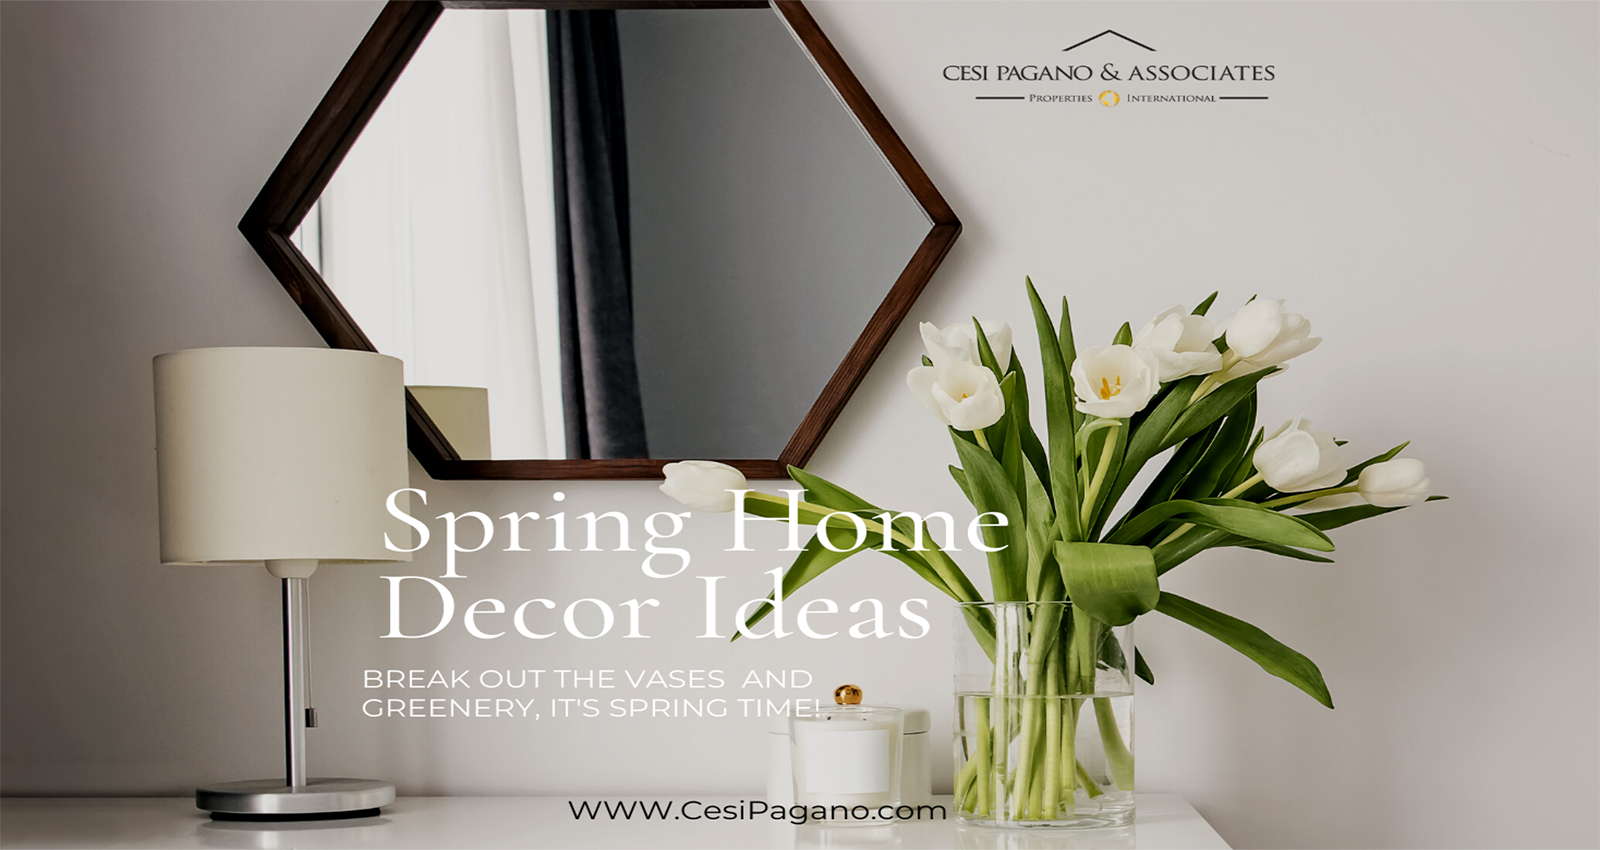 Spring Home Décor Ideas